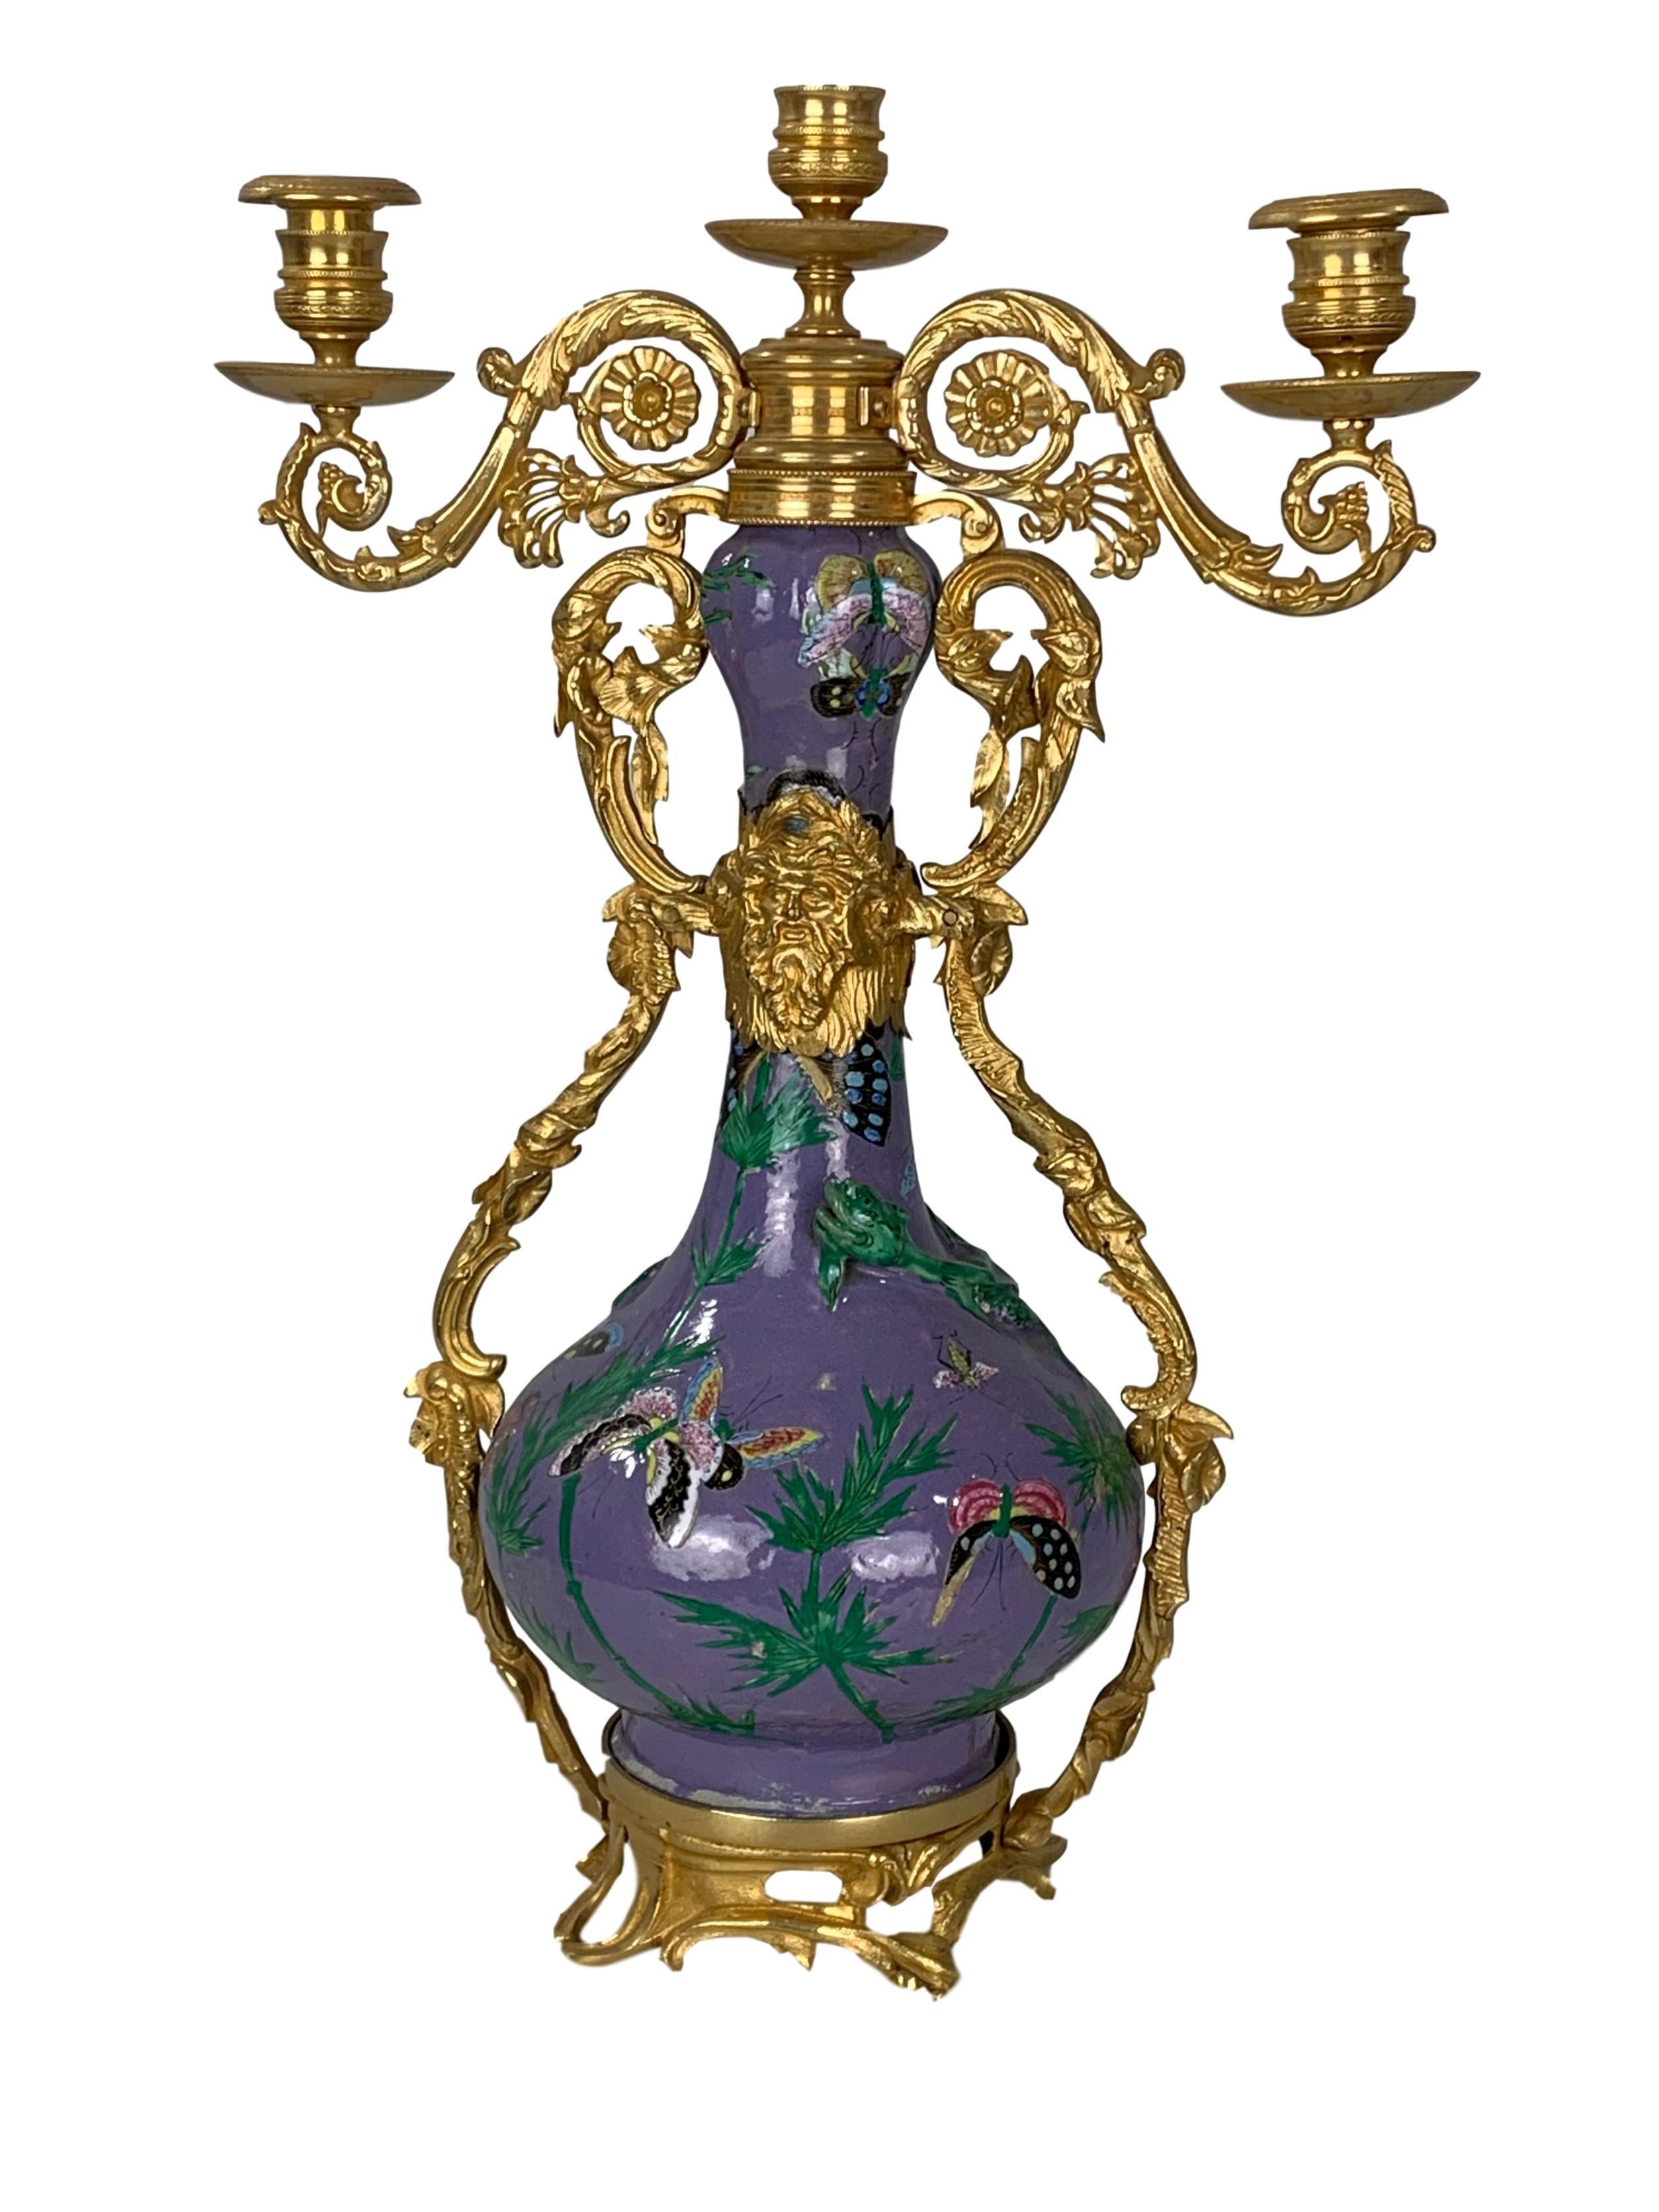 Paar Vasen aus chinesischem Export-Porzellan, Qing-Dynastie, frühes 20. Jahrhundert, mit Bronze und Ormolu-Montierung. Die Vasen sind mit Schmetterlingen und Eidechsen in Famille-Rose-Emaille auf leuchtend violettem Grund bemalt. Die vergoldeten